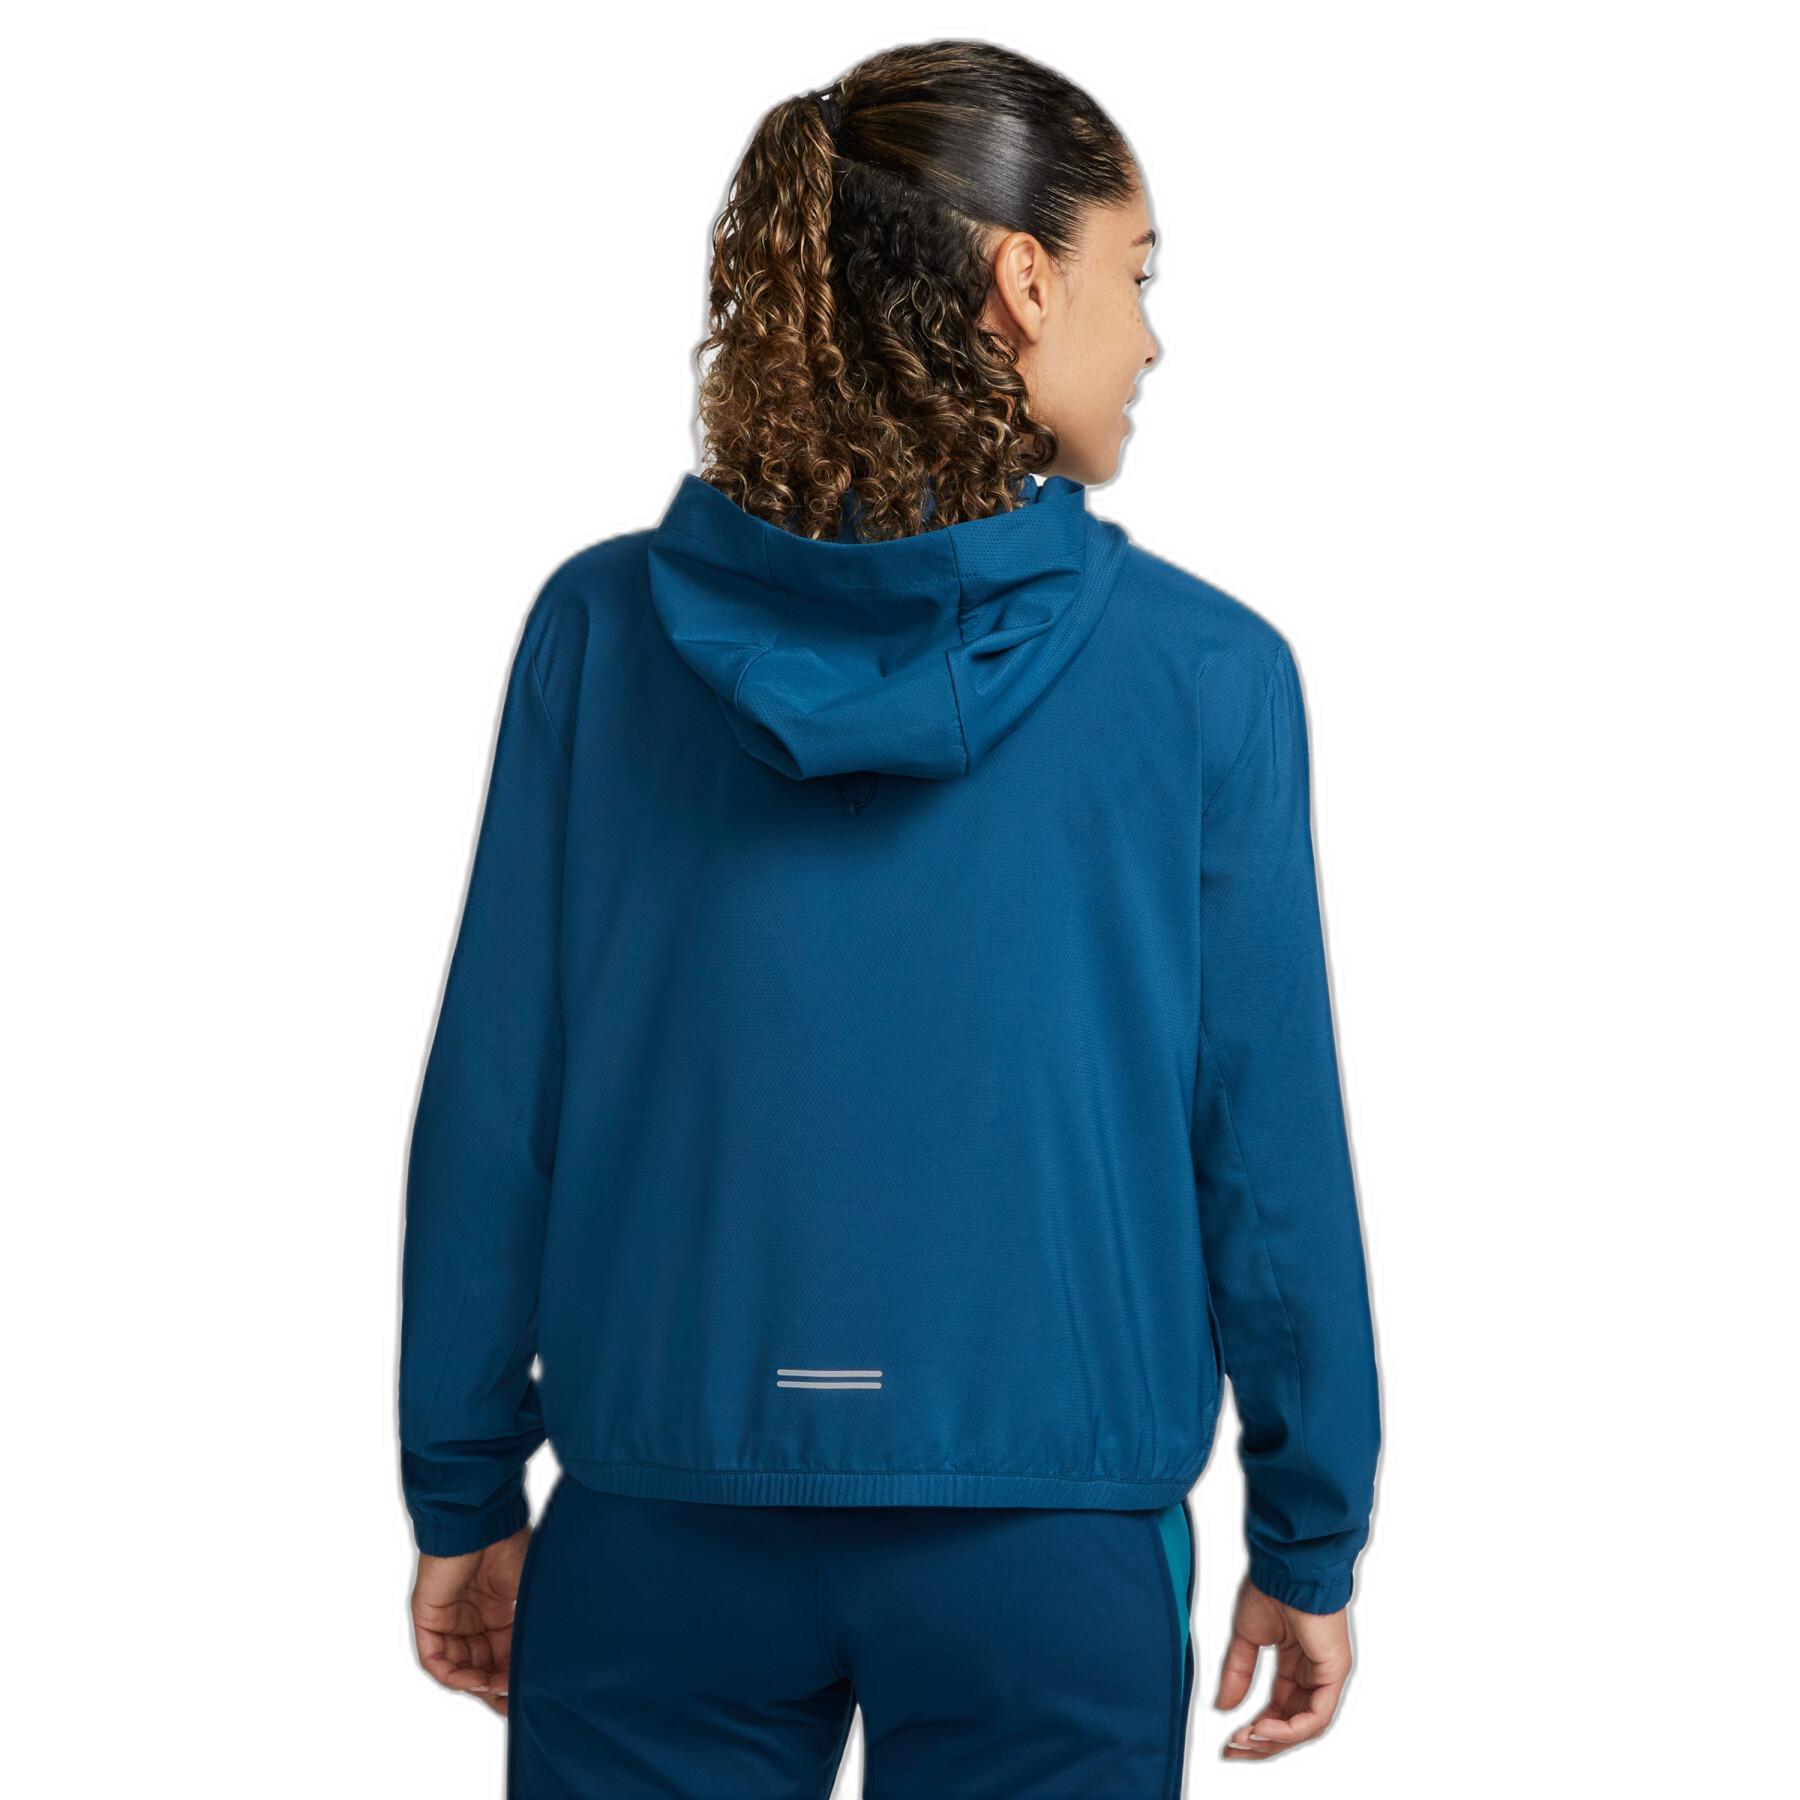 Wasserdichte Jacke für Frauen Nike Impossibly Light